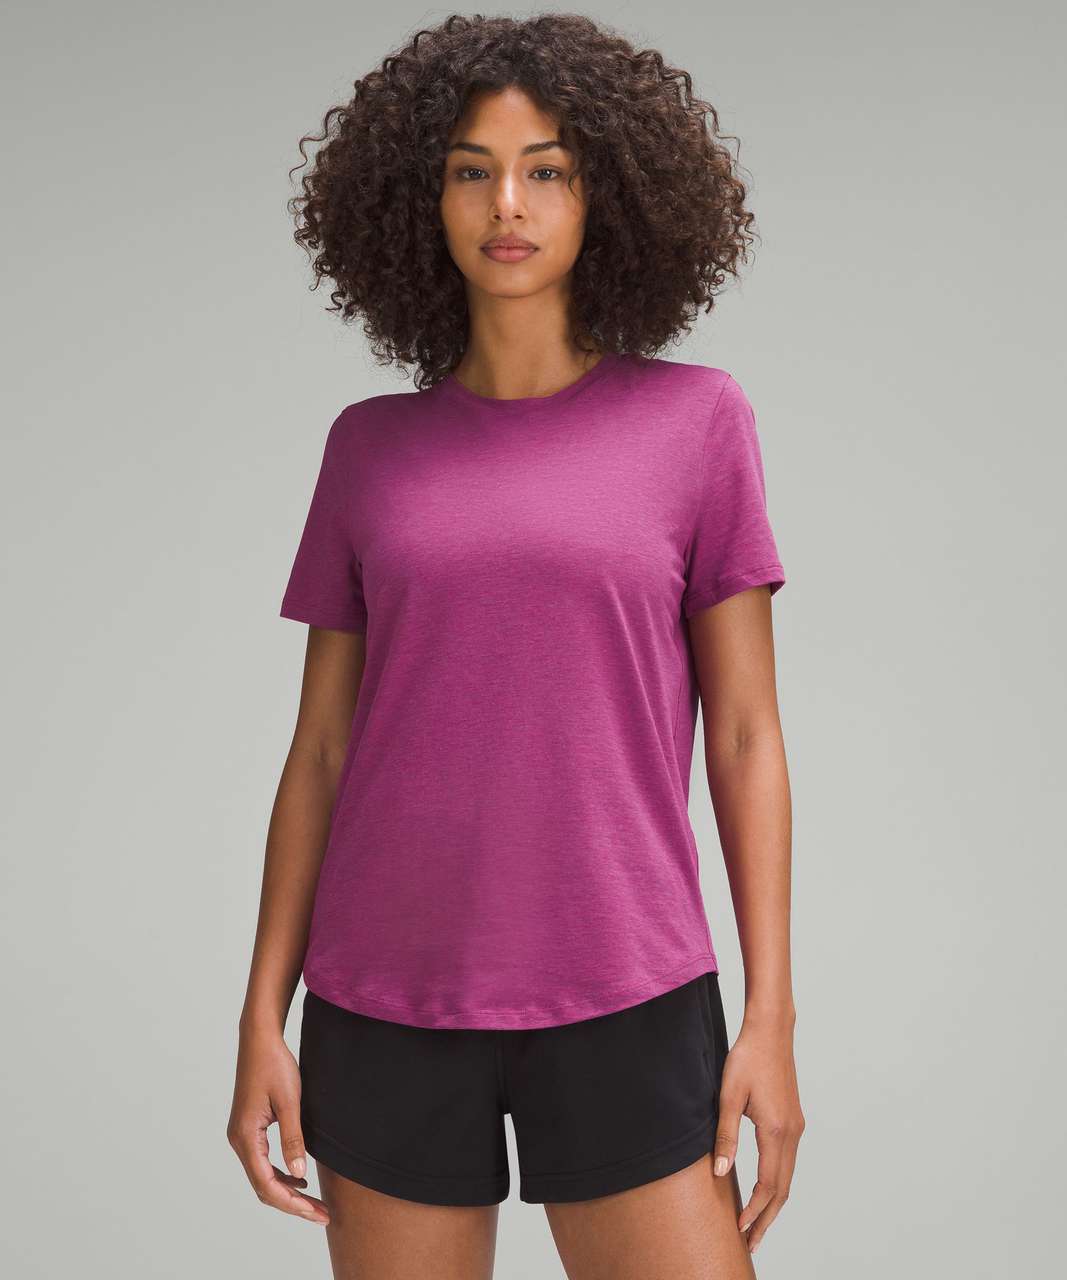 Lululemon Love Crewneck T-Shirt - Heathered Magenta Purple